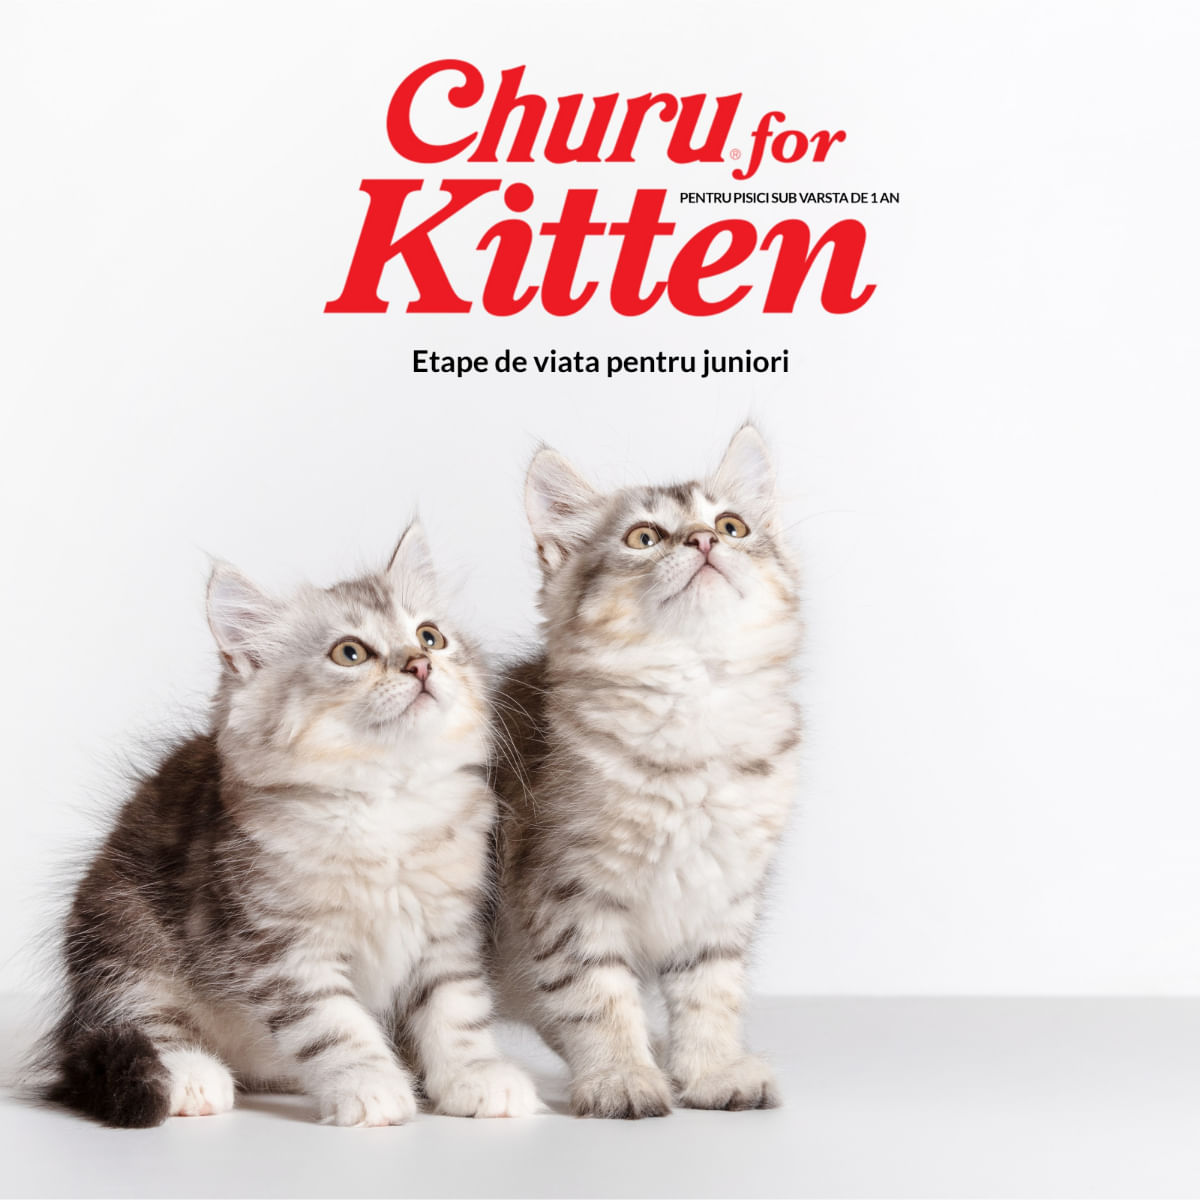 INABA Churu Kitten, Pui,, tub recompense fără cereale pisici junior, (piure) INABA Churu Kitten, Pui, plic, tub recompense fără cereale pisici junior, (piure), 56g